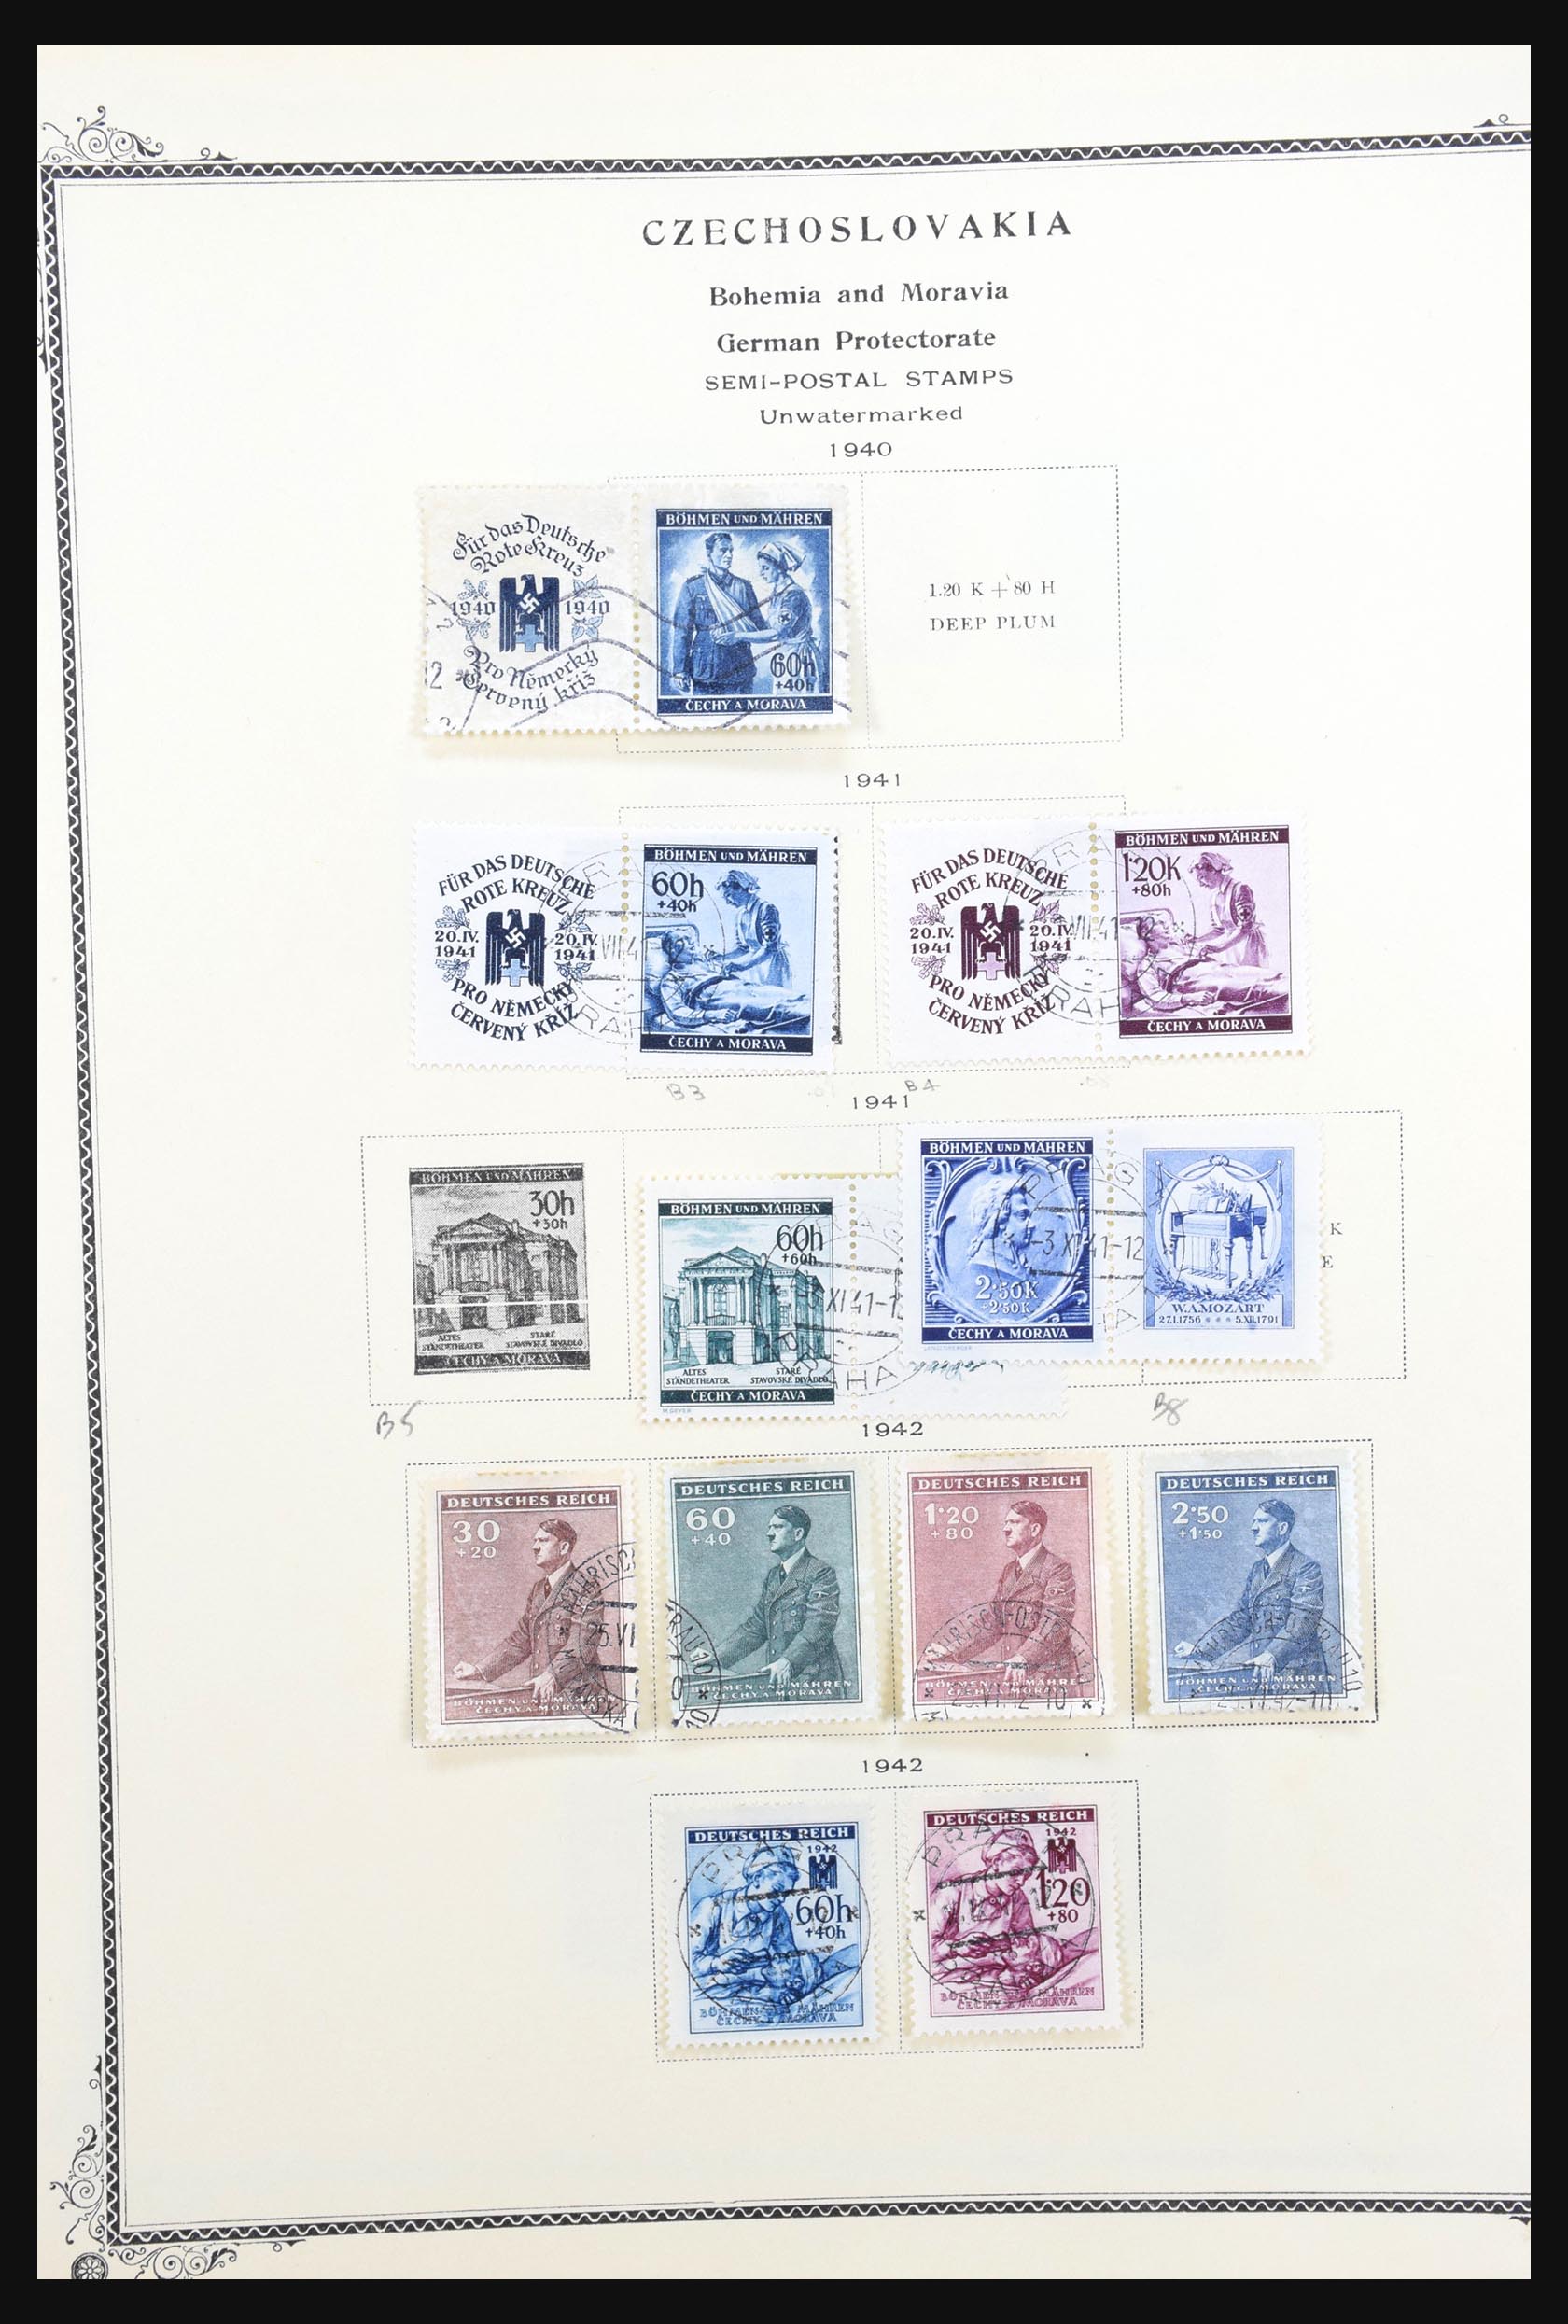 31300 037 - 31300 Duitsland superverzameling 1849-1990.